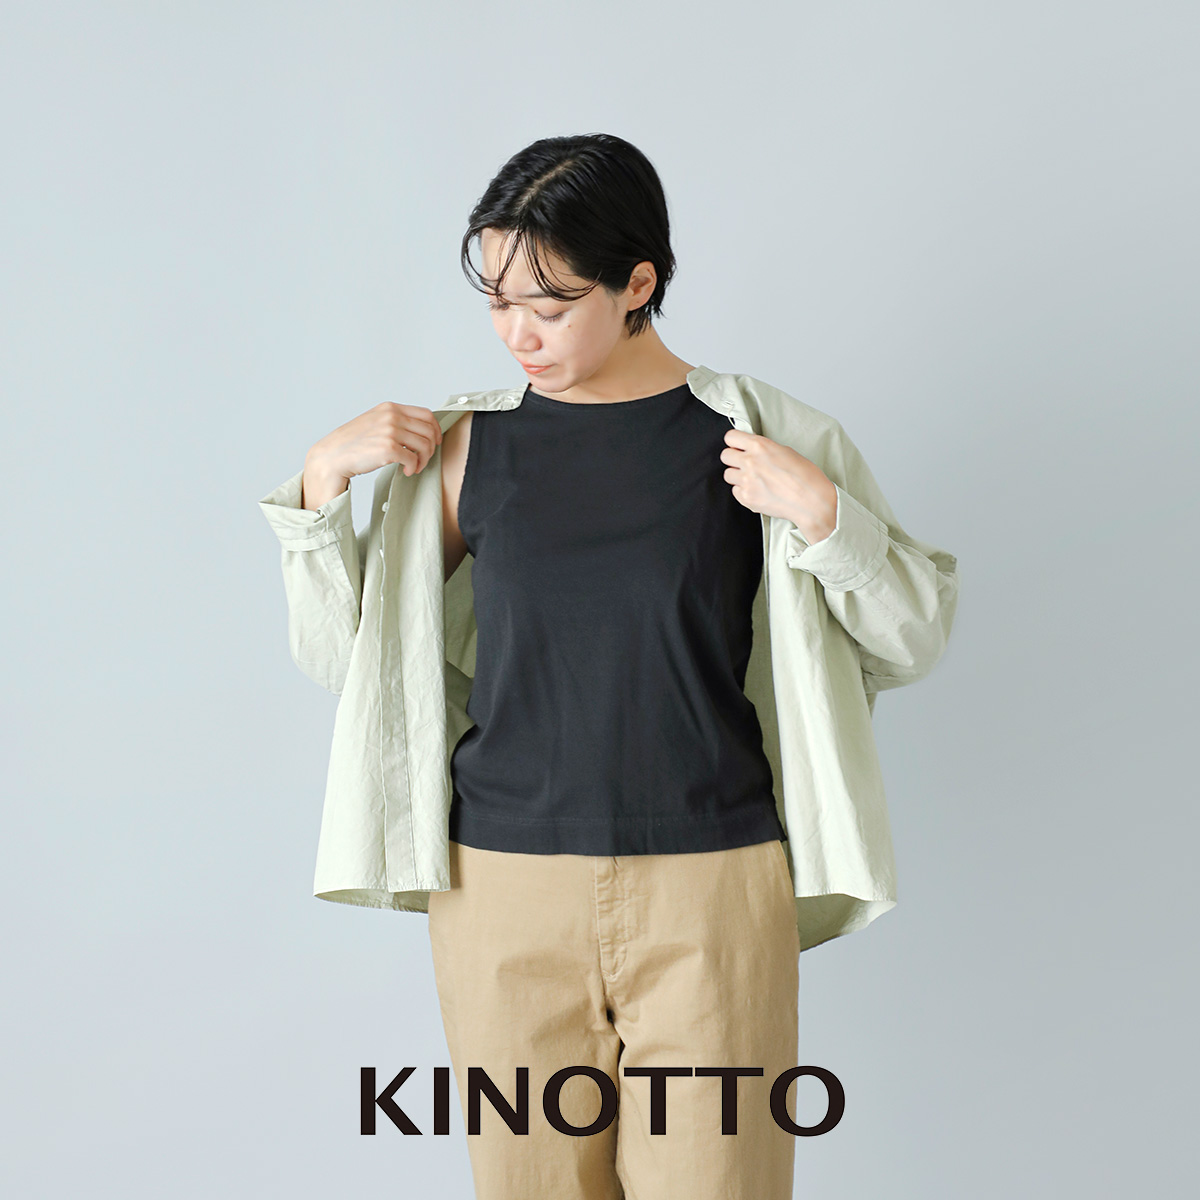 KINOTTO(キノット)タンギス綿 ノースリーブ 2231c005